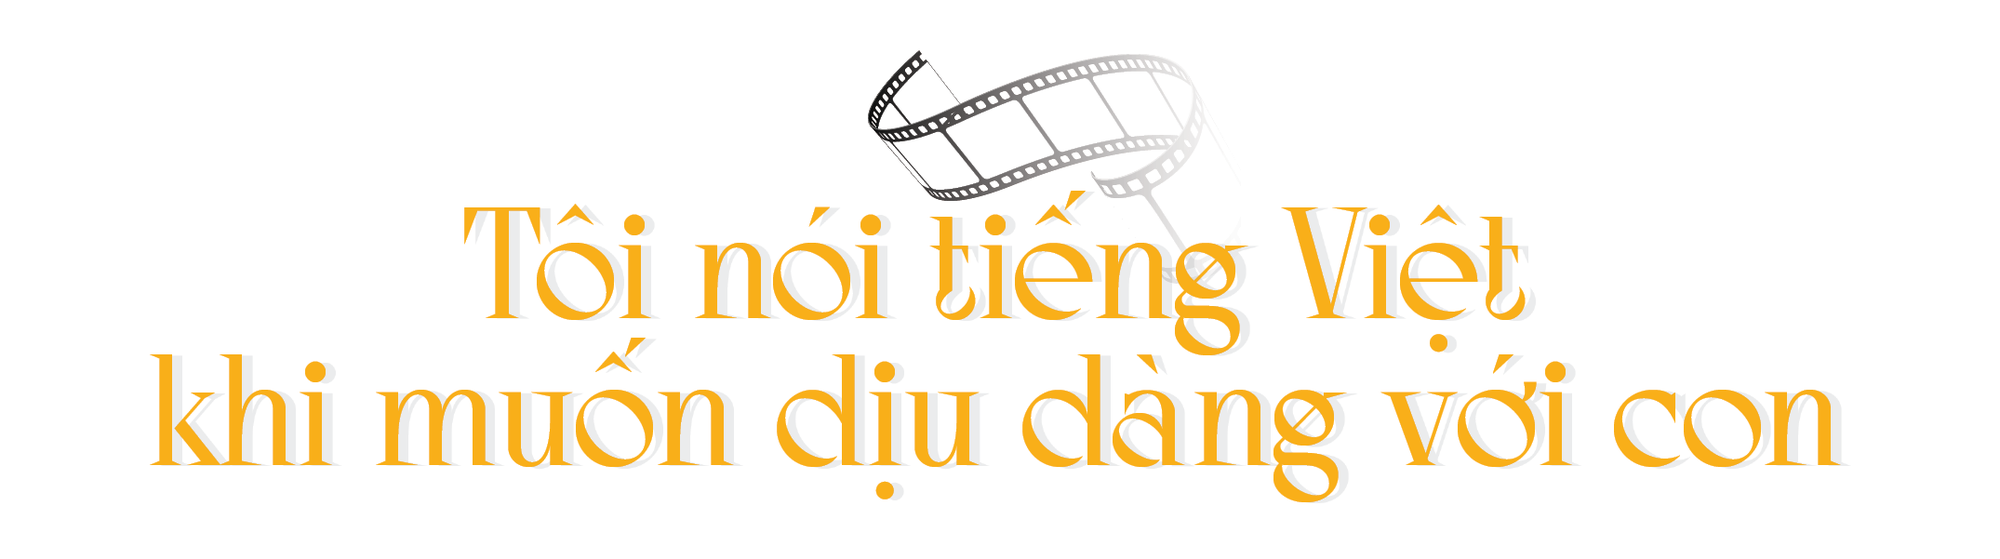 Đạo diễn Trần Anh Hùng: Tôi luôn muốn làm phim nói tiếng Việt Nam - Ảnh 9.